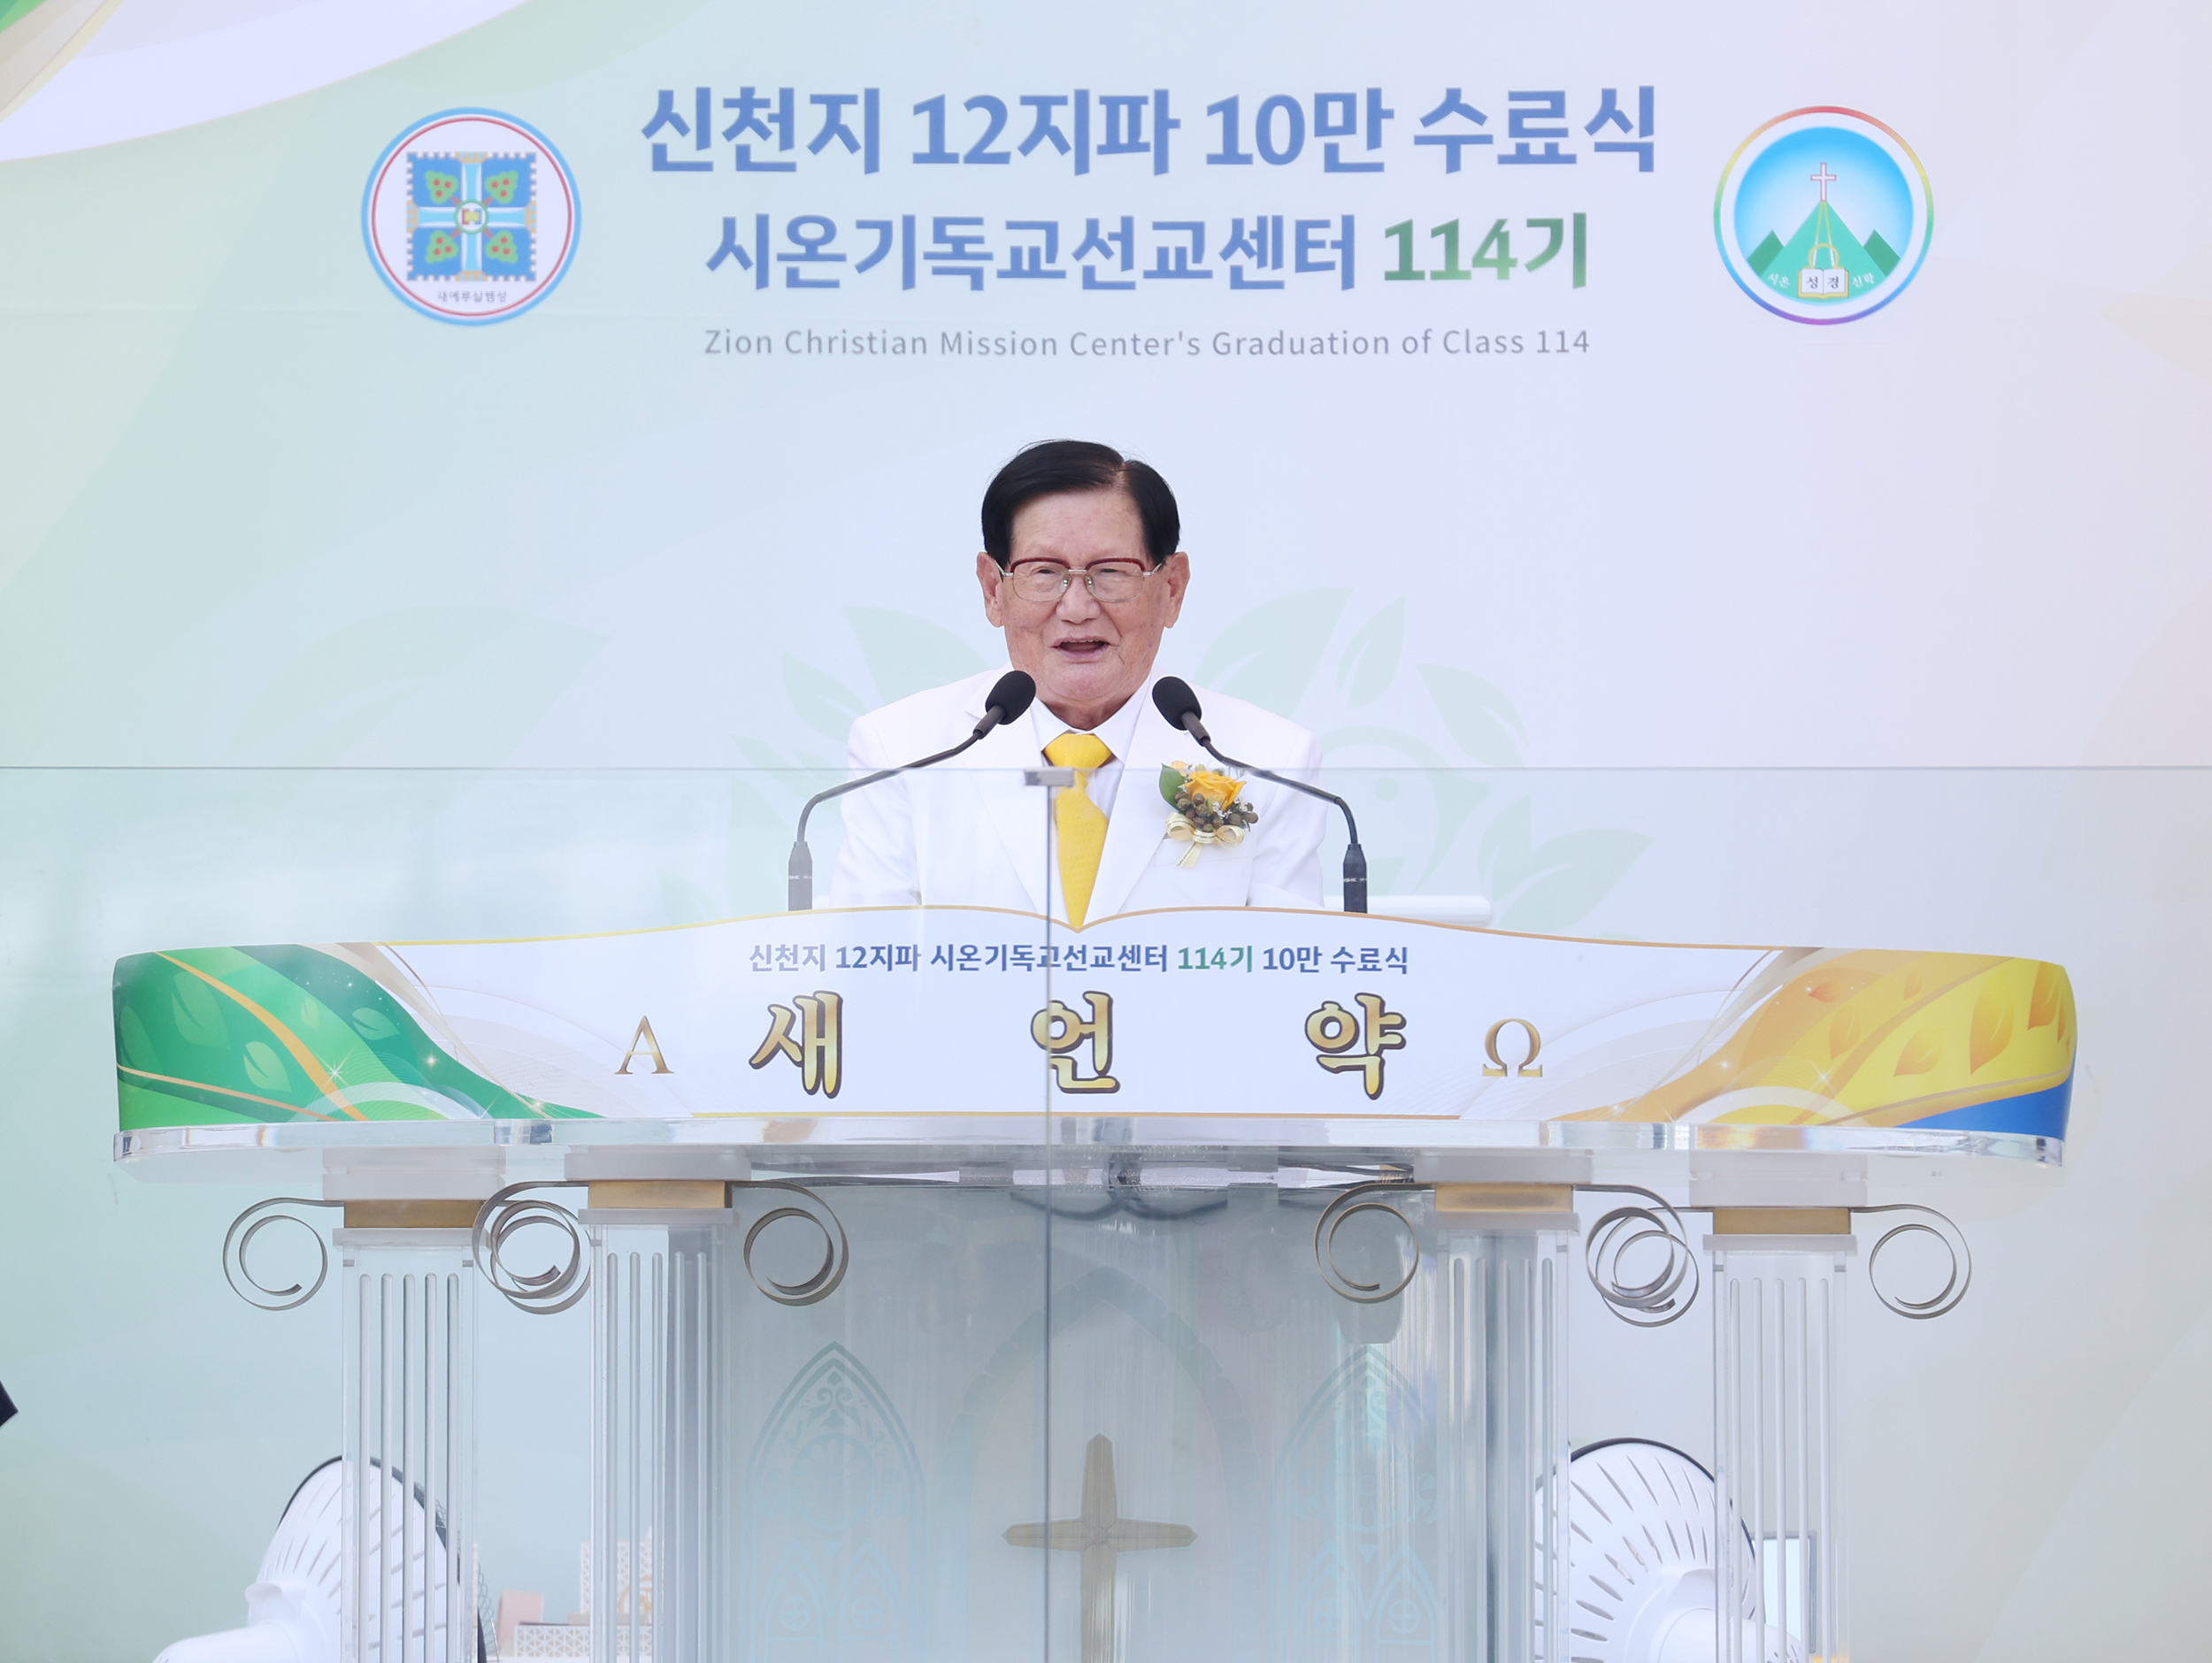 Chairman Man Hee Lee of Shincheonji Church